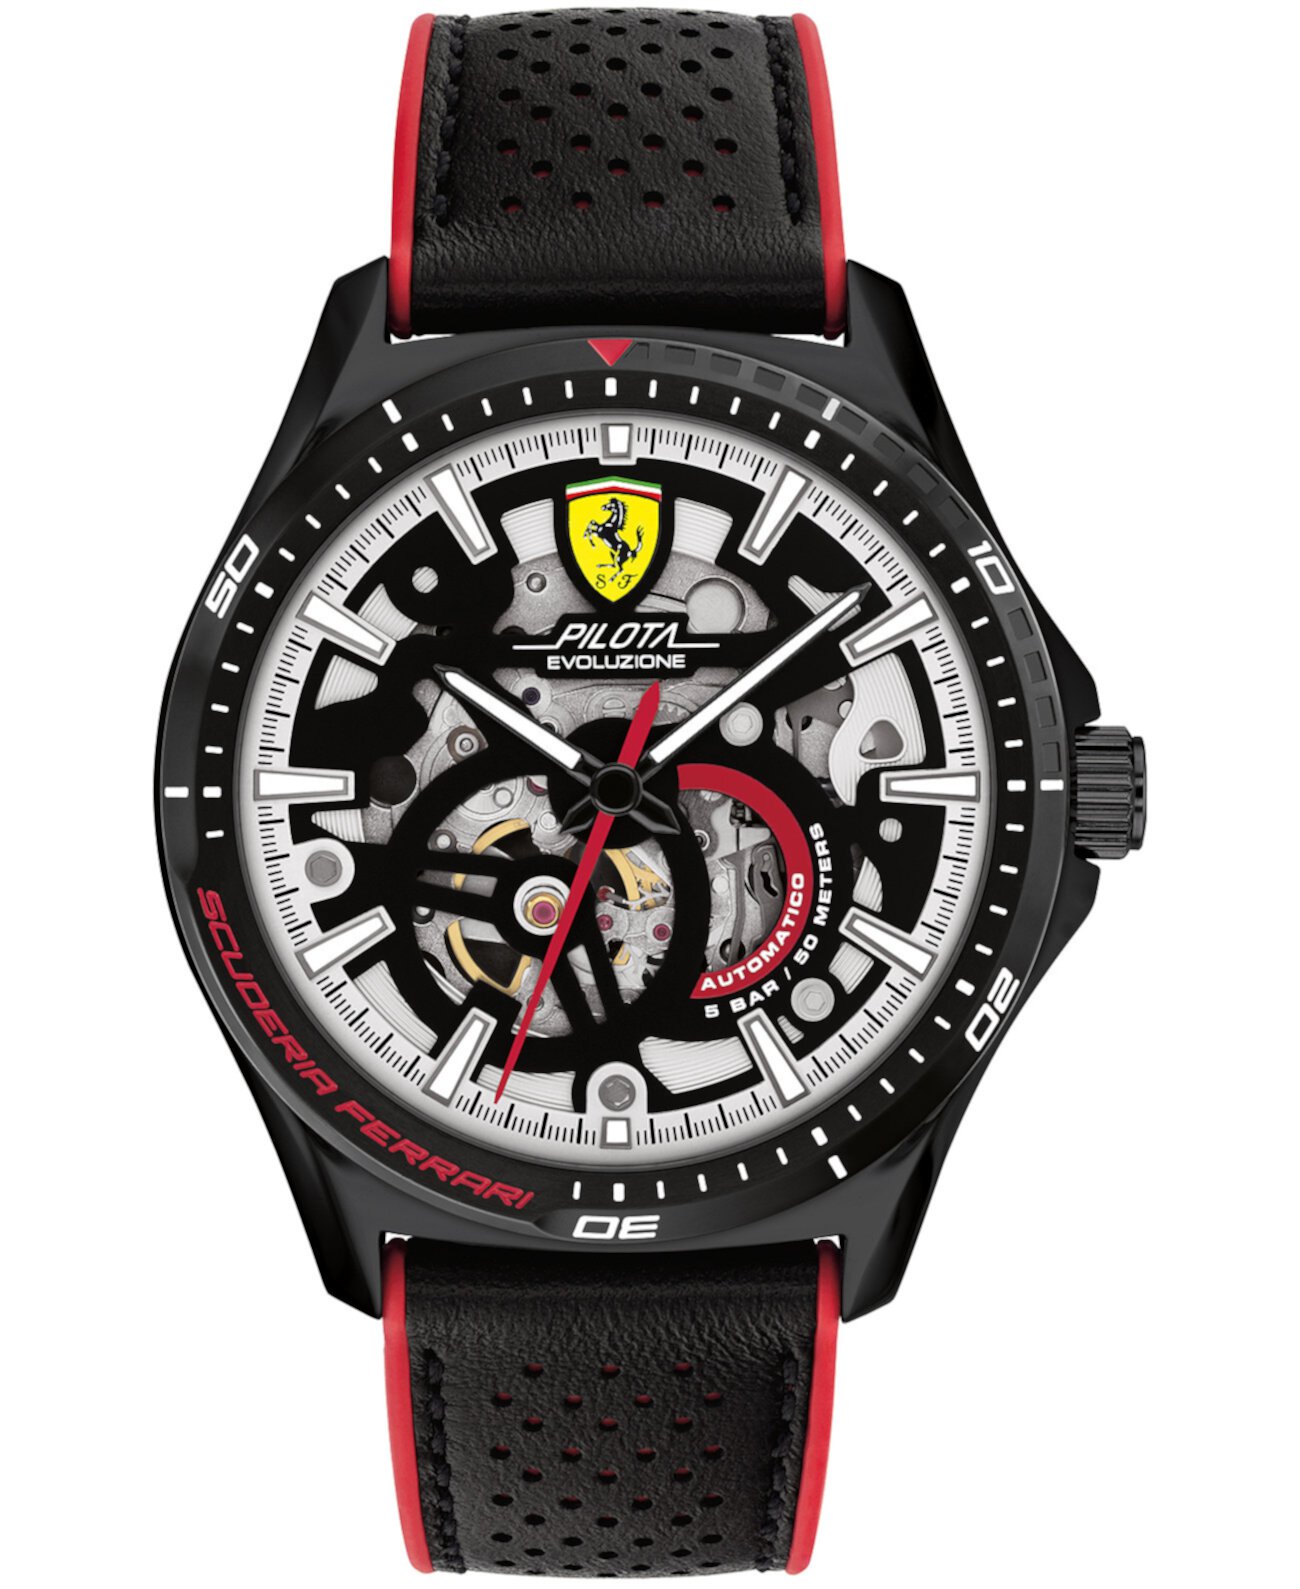 Мужские автоматические часы Pilota Evo с черным кожаным ремешком, 44 мм Ferrari